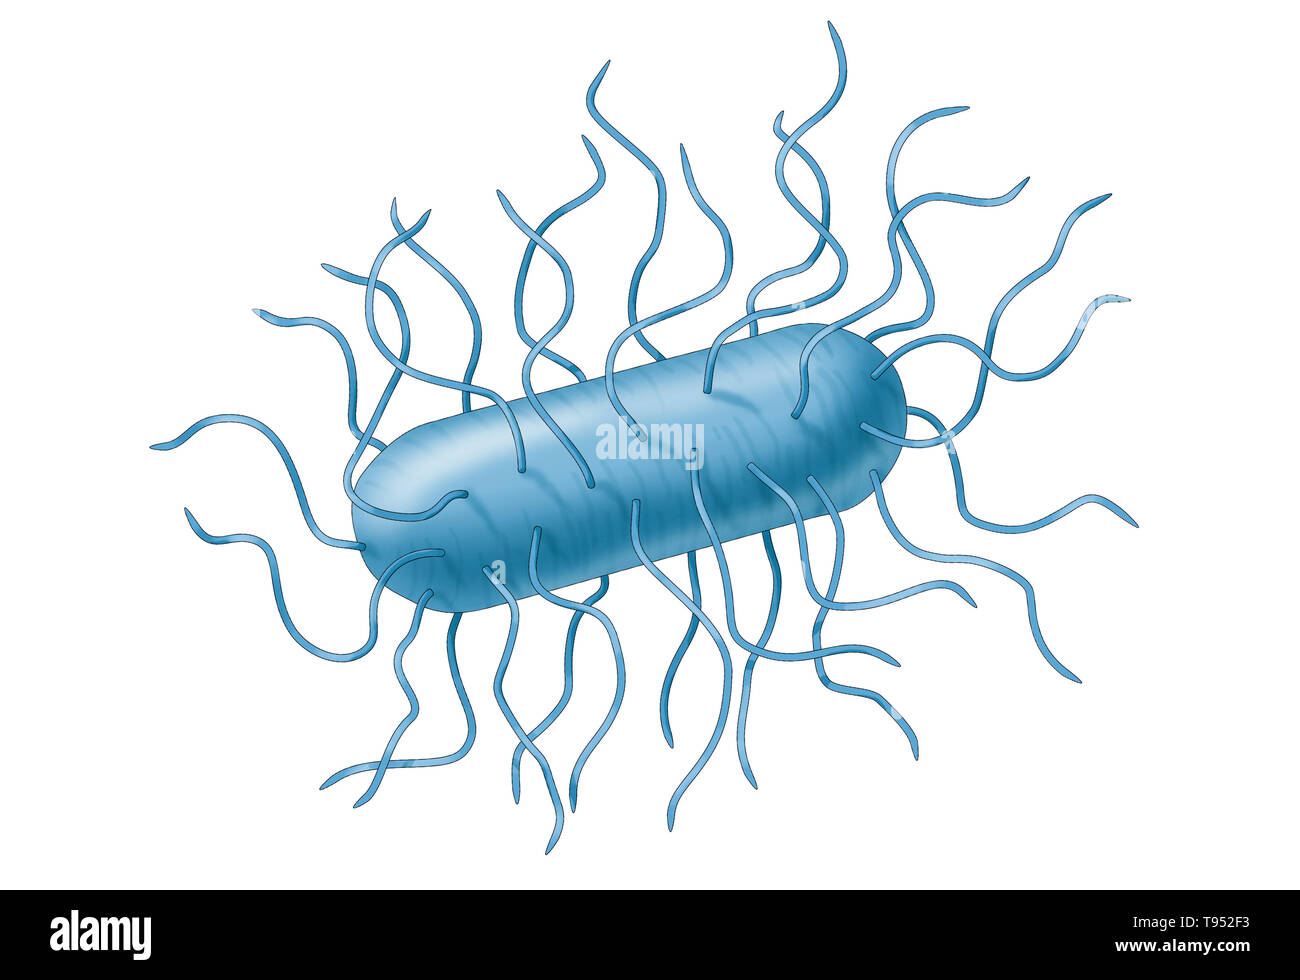 La bactérie E. coli. Escherichia coli est une bactérie gram-négatif, anaérobies facultatifs, forme de tige, les coliformes Bactéries du genre Escherichia qui est généralement trouvé dans le côlon des organismes à sang chaud (endothermes). La plupart des souches de E. coli sont inoffensives, mais certains sérotypes peuvent causer de graves intoxications alimentaires chez leurs hôtes, et sont parfois responsables de rappels de produits en raison de la contamination des aliments. Banque D'Images